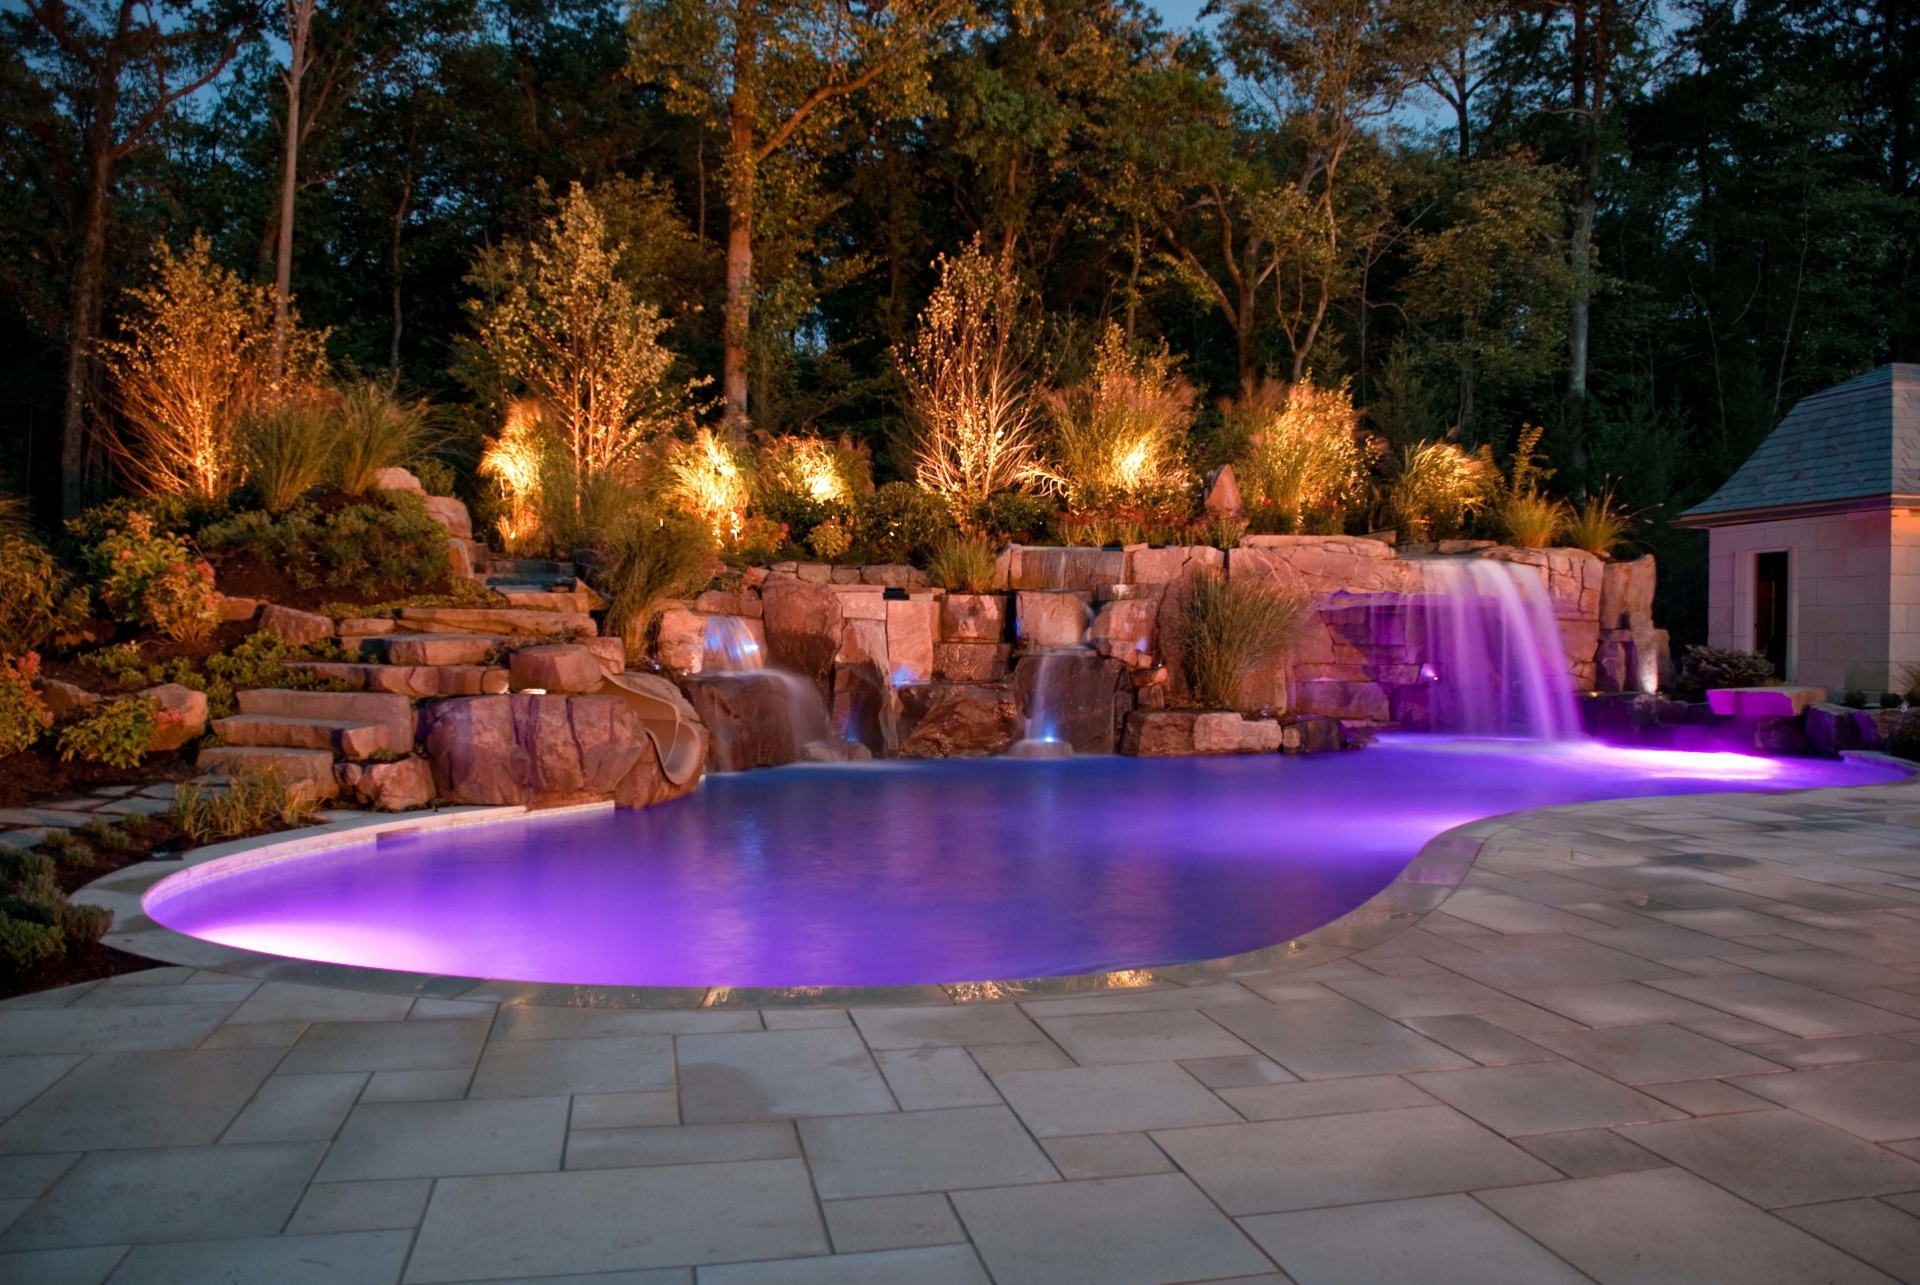 Bể bơi được lấy nước từ hệ thống chảy qua những viên đá phía trên giống như một dòng suối, cộng thêm ánh đèn màu tím ombre khiến cho bể bơi này trông giống như một trốn thần tiên vậy.